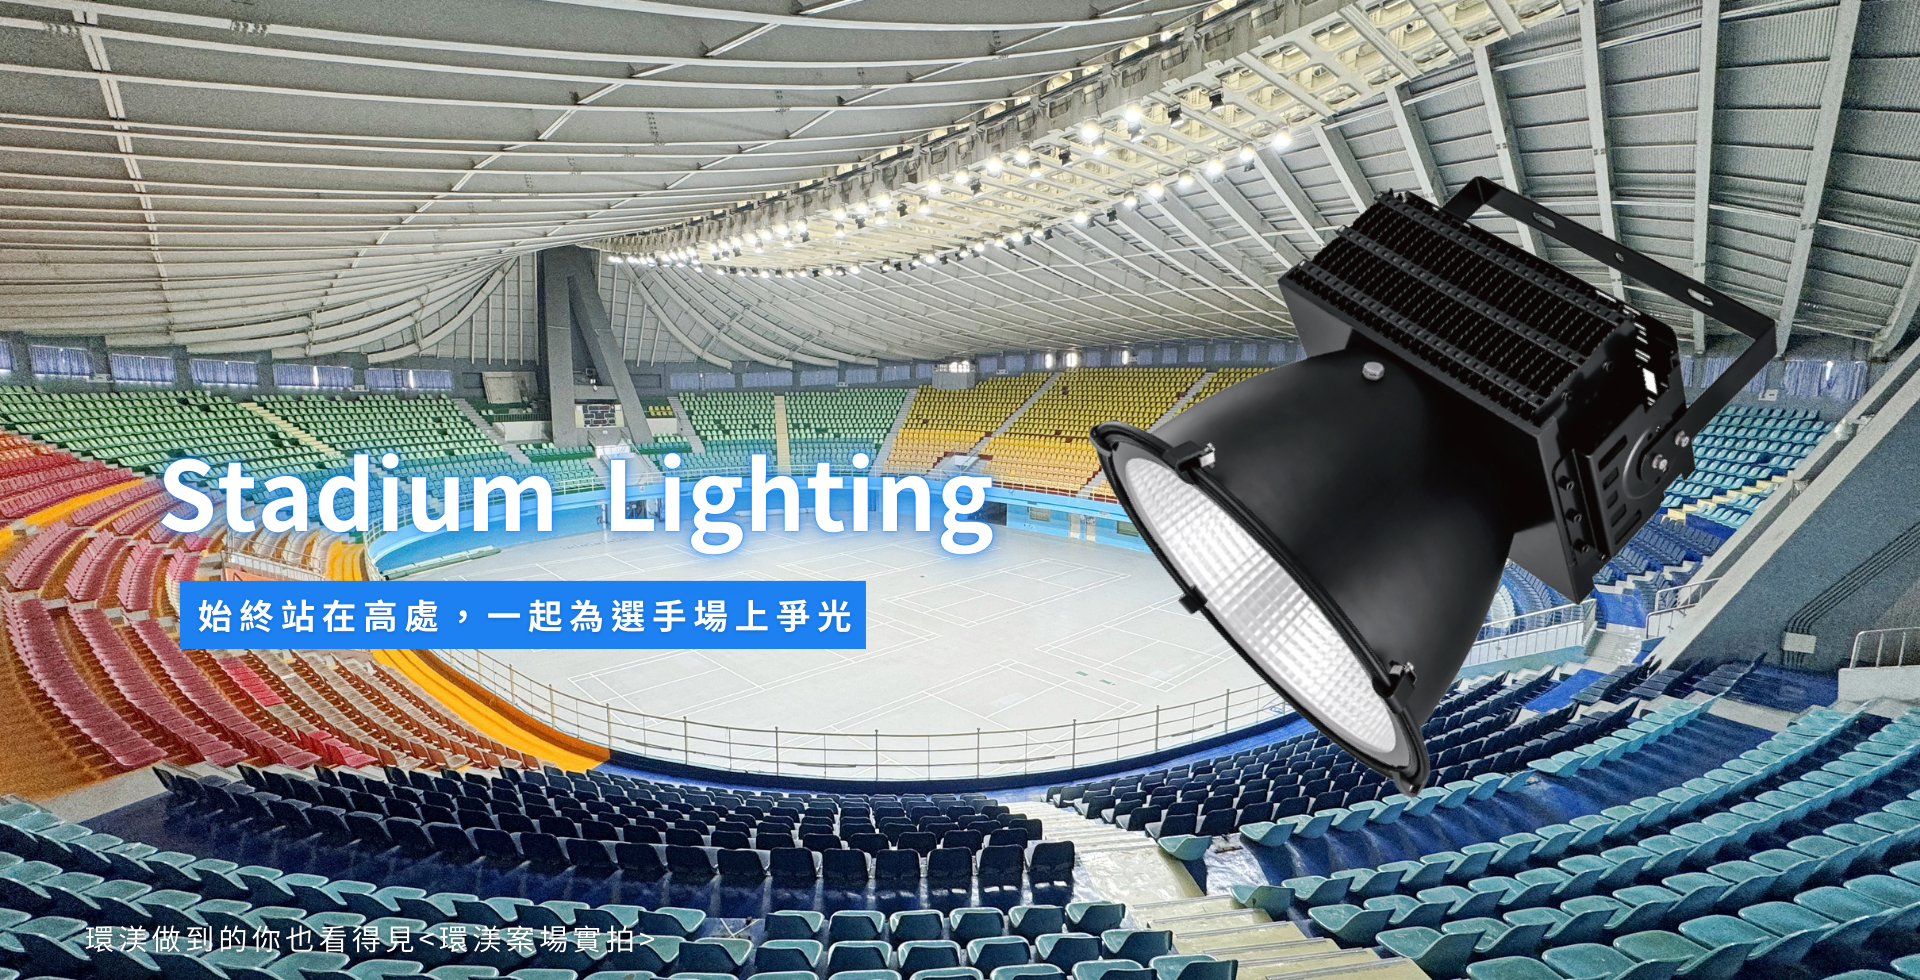 環渼節能 LED燈 - 廠房照明 - Industrial Lighting - 廠房照明使用LED節能燈具,安全更升級